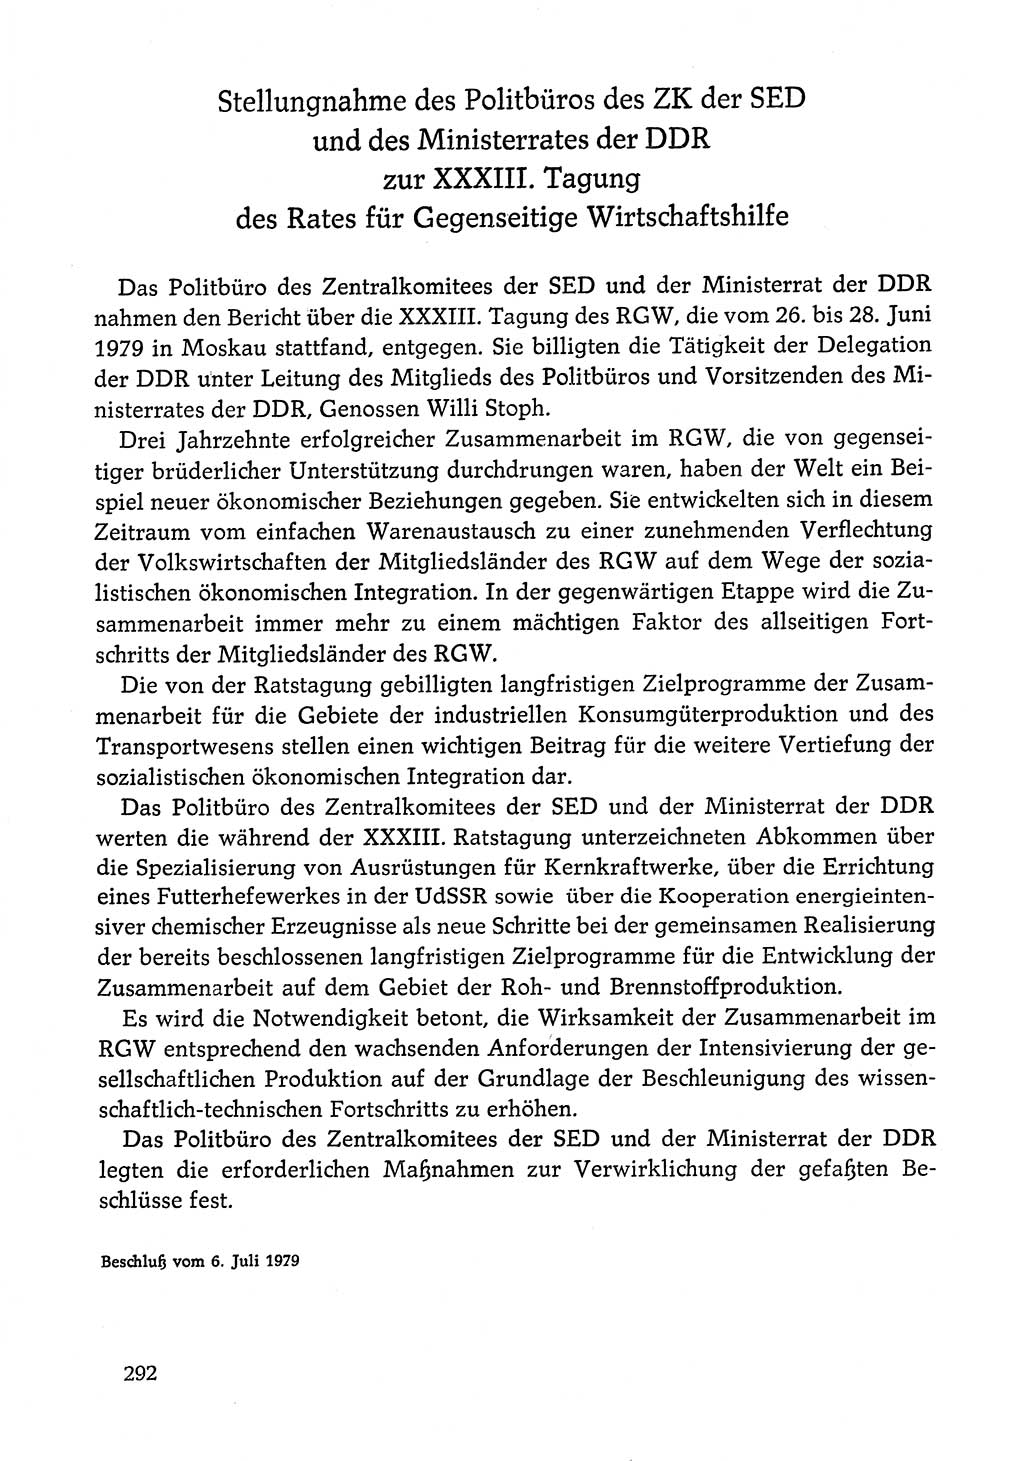 Dokumente der Sozialistischen Einheitspartei Deutschlands (SED) [Deutsche Demokratische Republik (DDR)] 1978-1979, Seite 292 (Dok. SED DDR 1978-1979, S. 292)